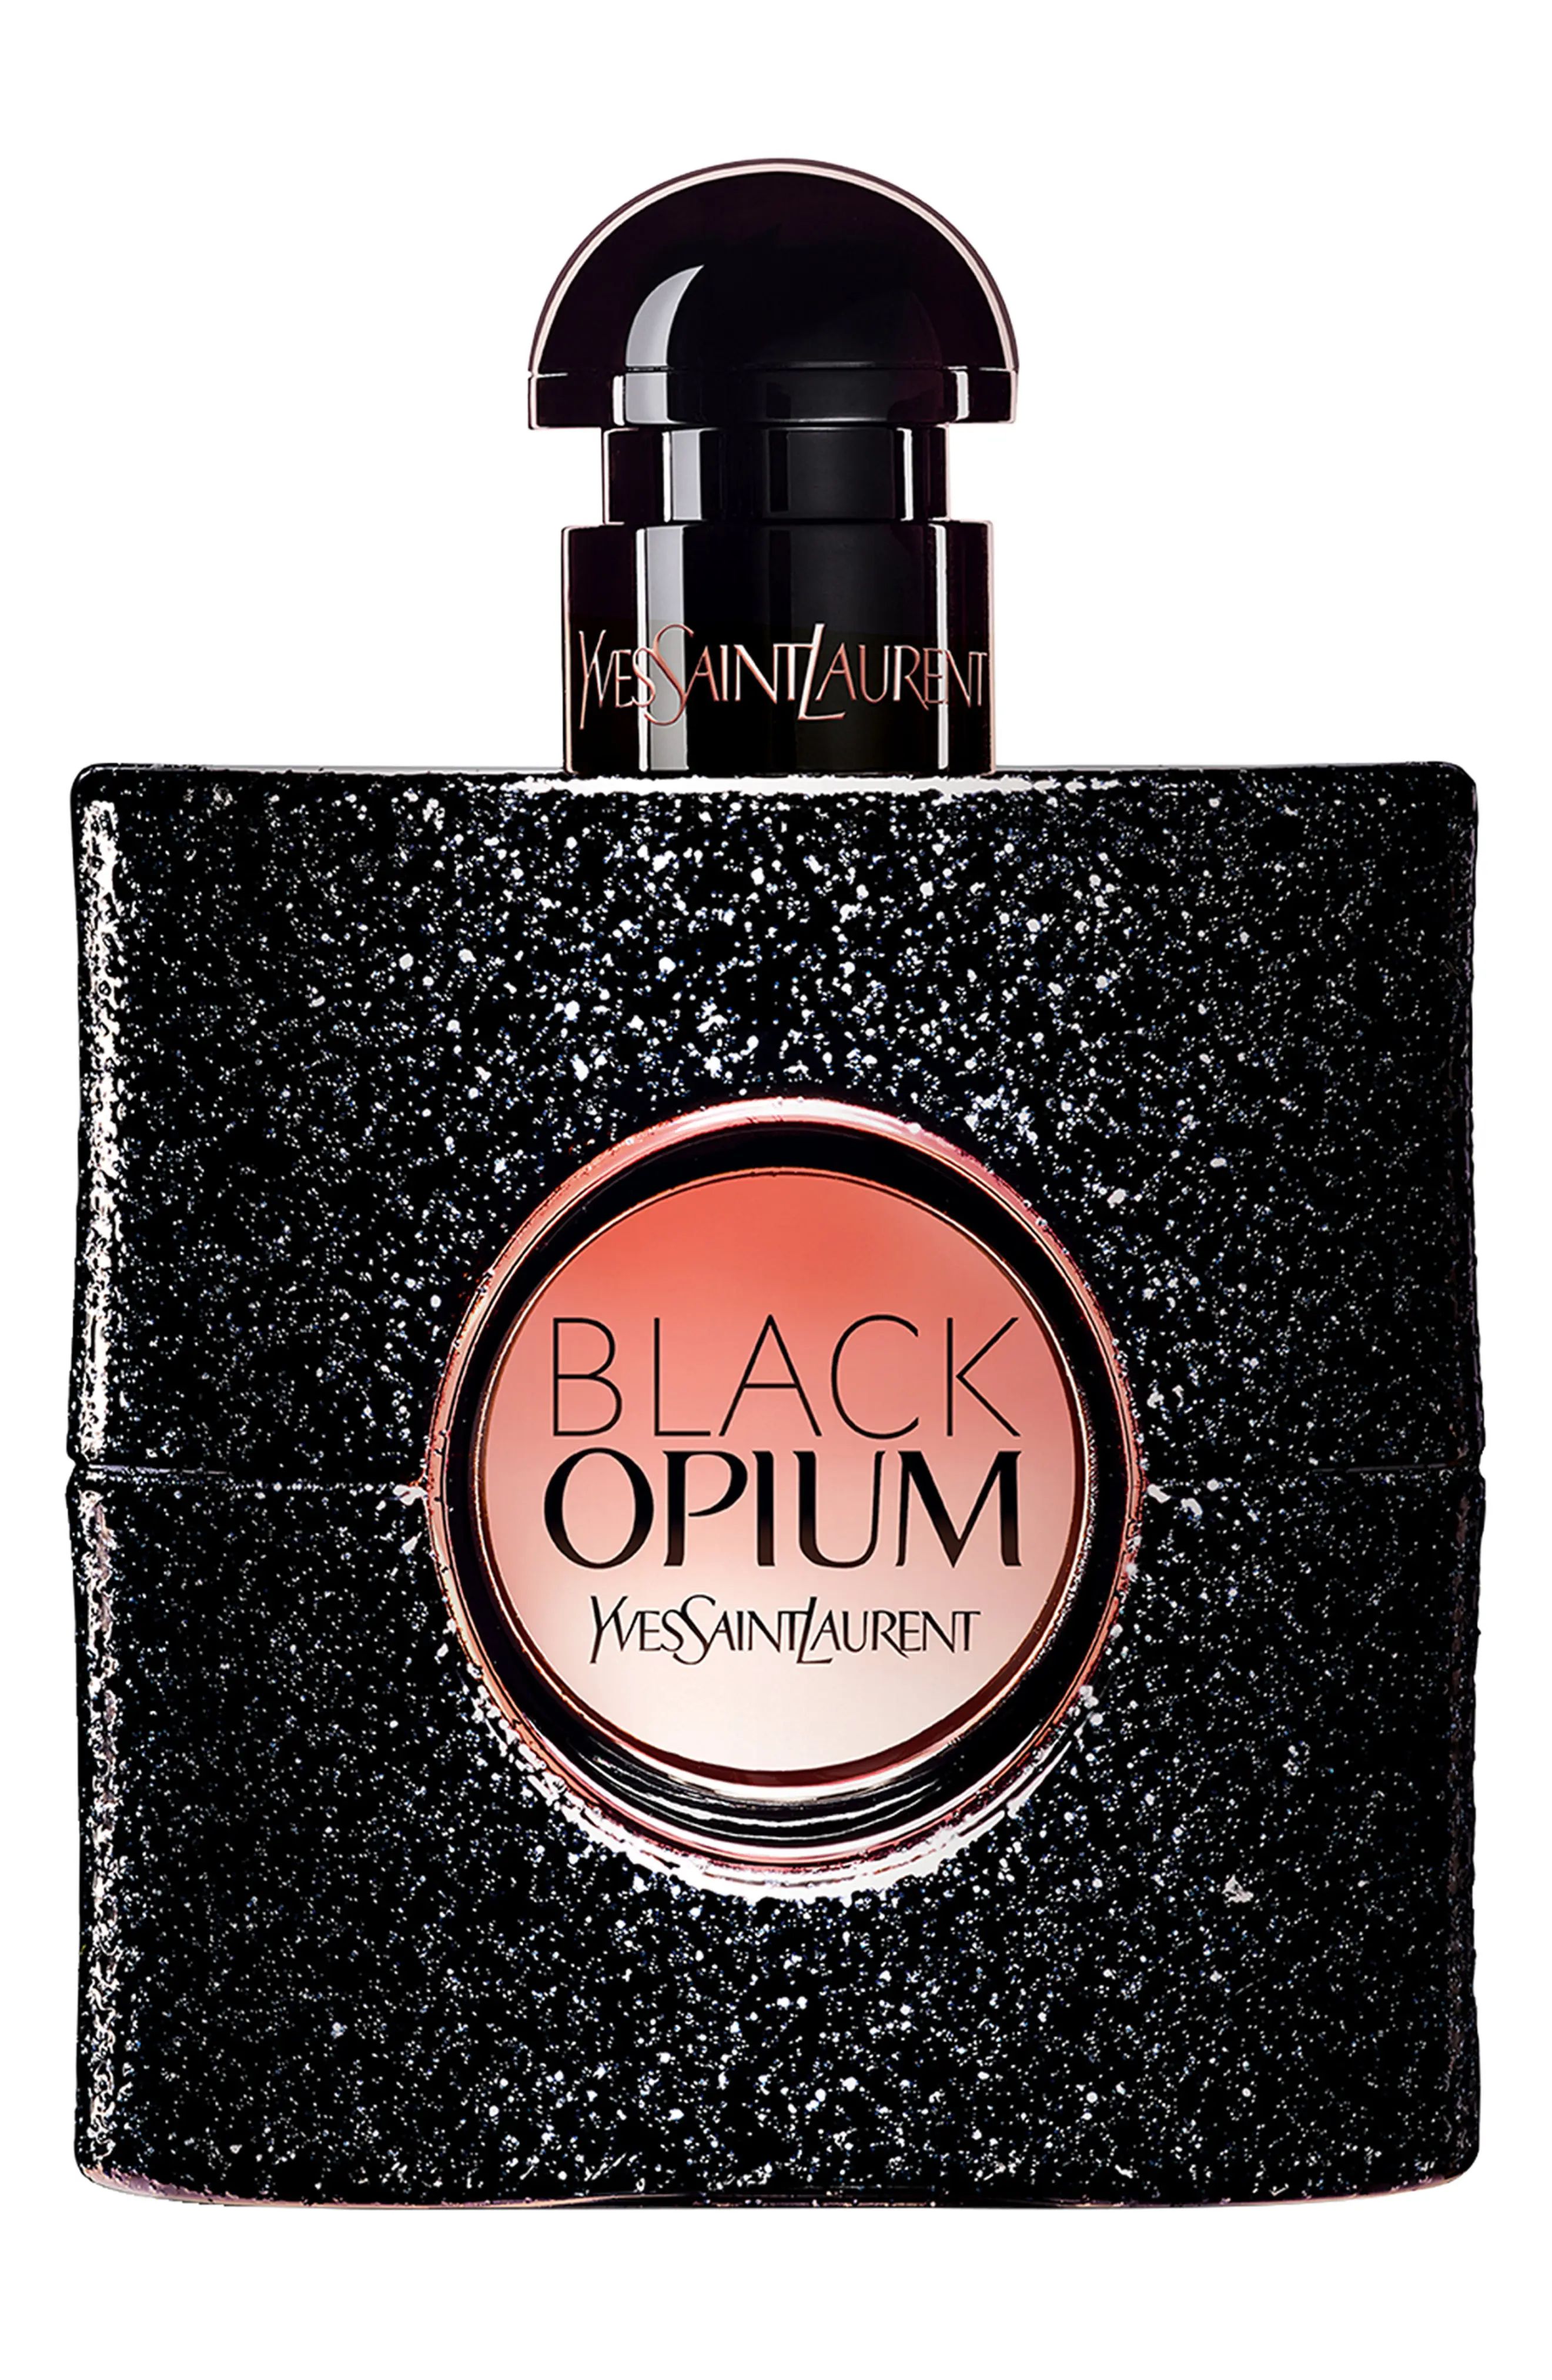 Yves Saint Laurent Black Opium Eau de Parfum, Size 5 Oz at Nordstrom | Nordstrom